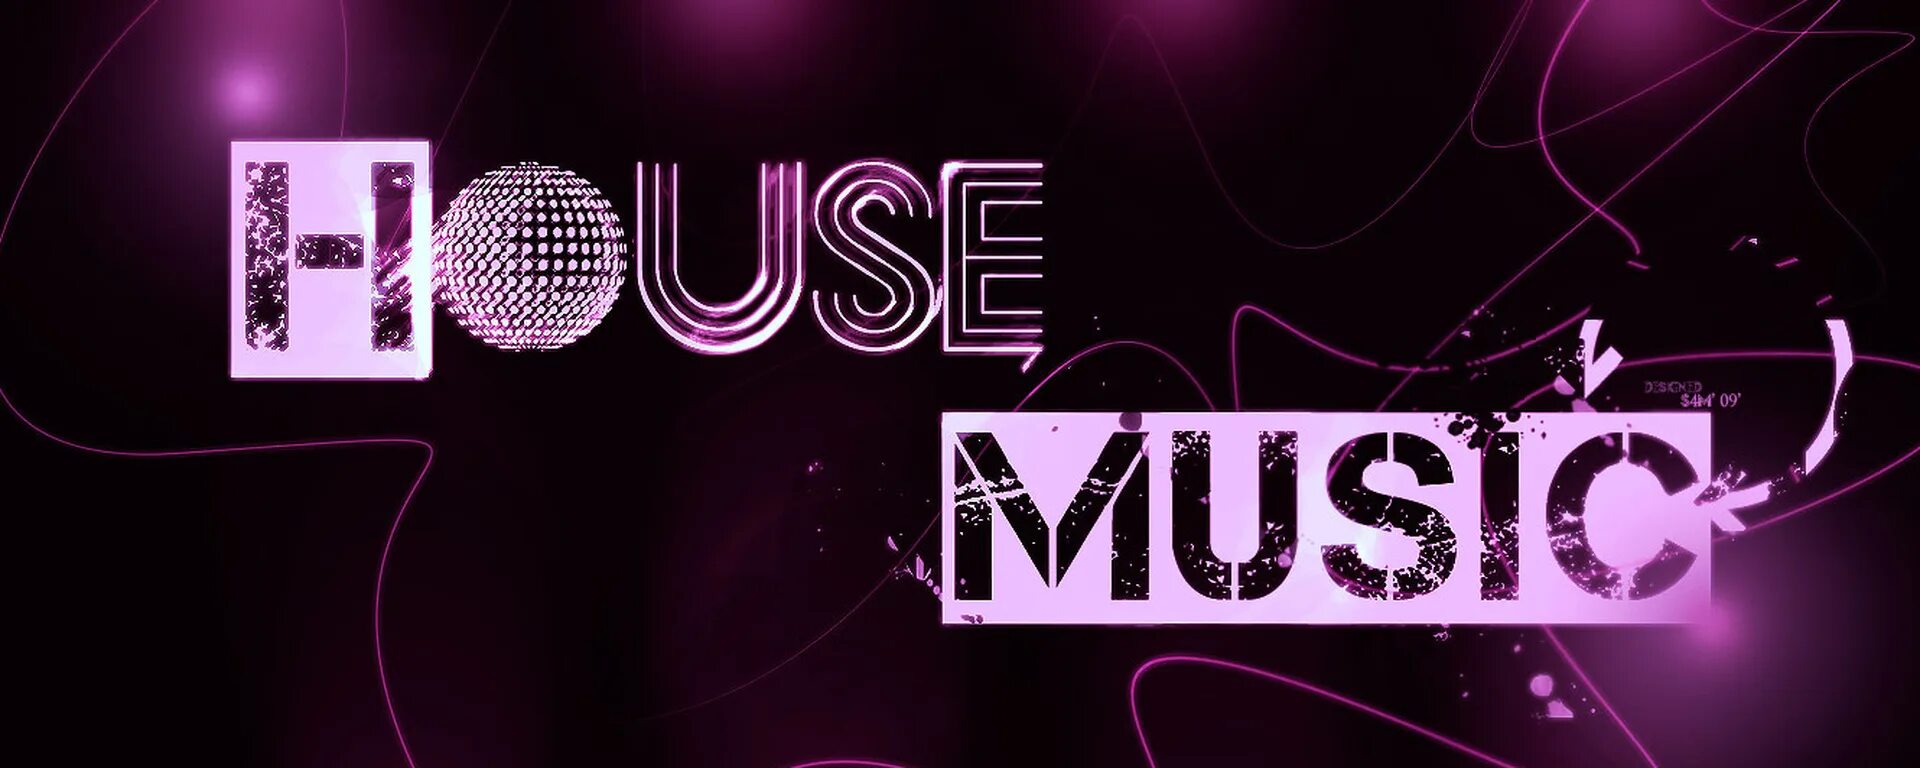 Музыка house music. Хаус Мьюзик. House Music картинки. Хаус стиль музыки. House Music обложка.